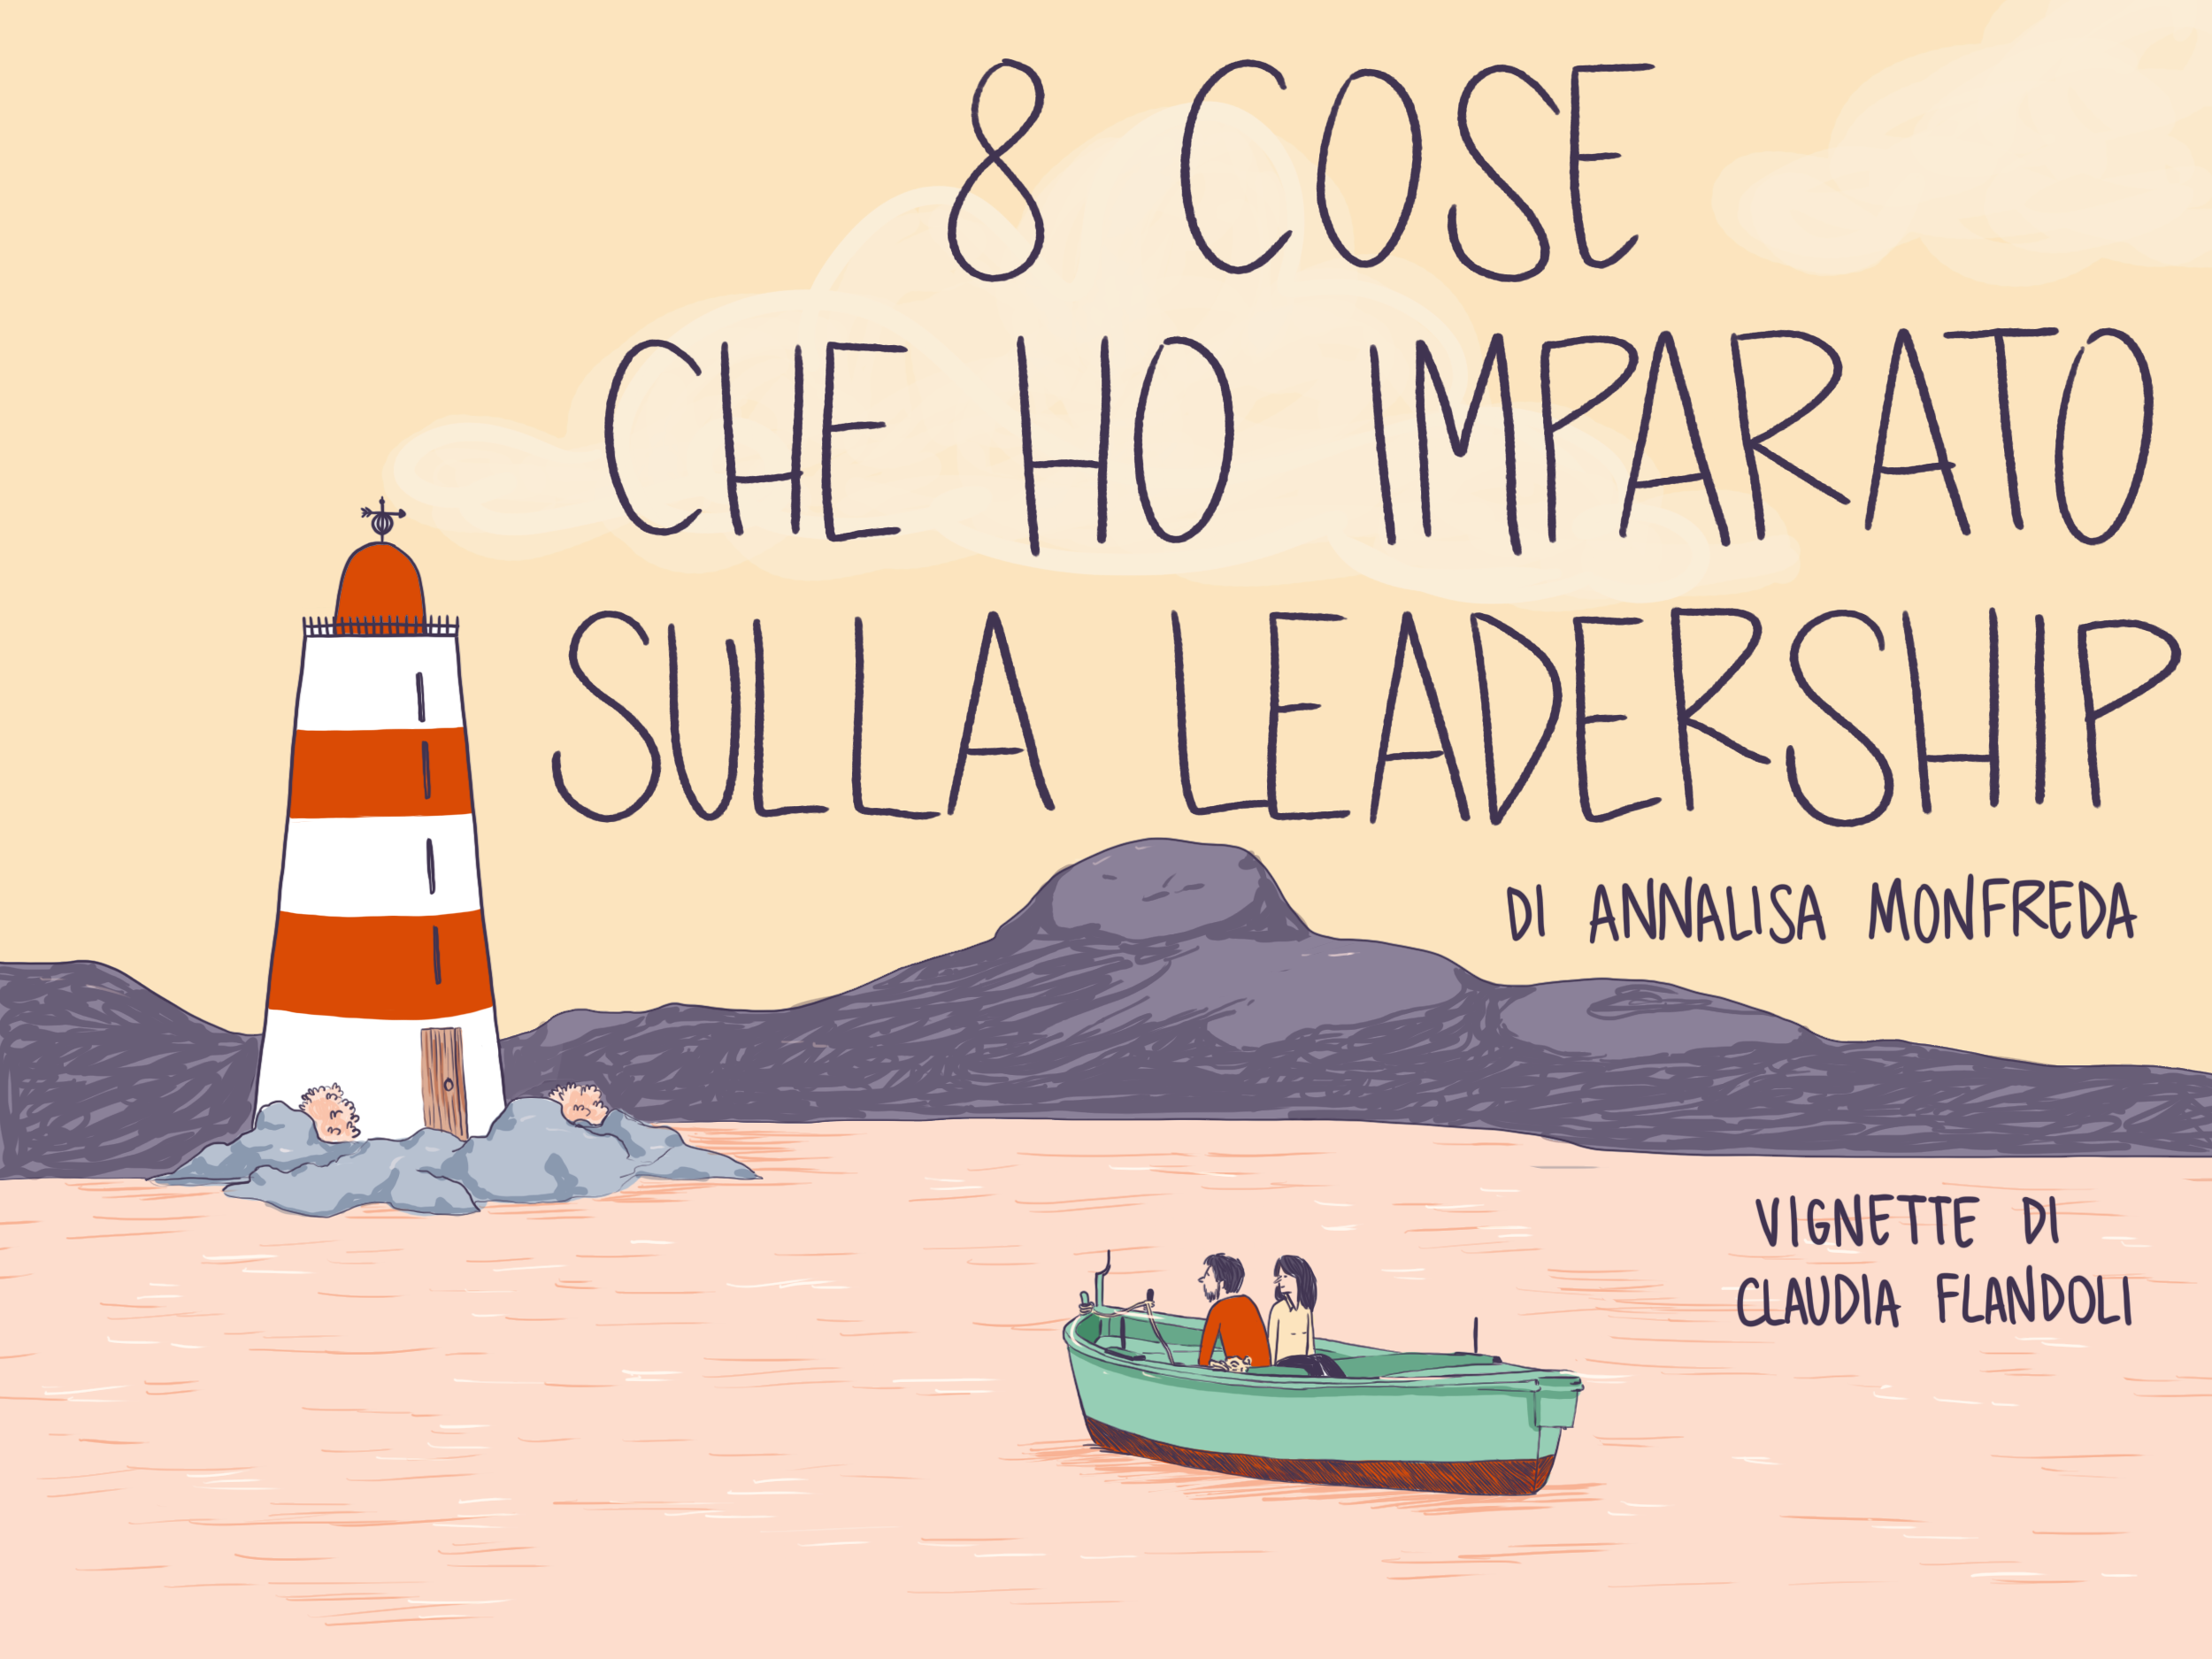 Otto cose che ho imparato sulla leadership, by Annalisa Monfreda